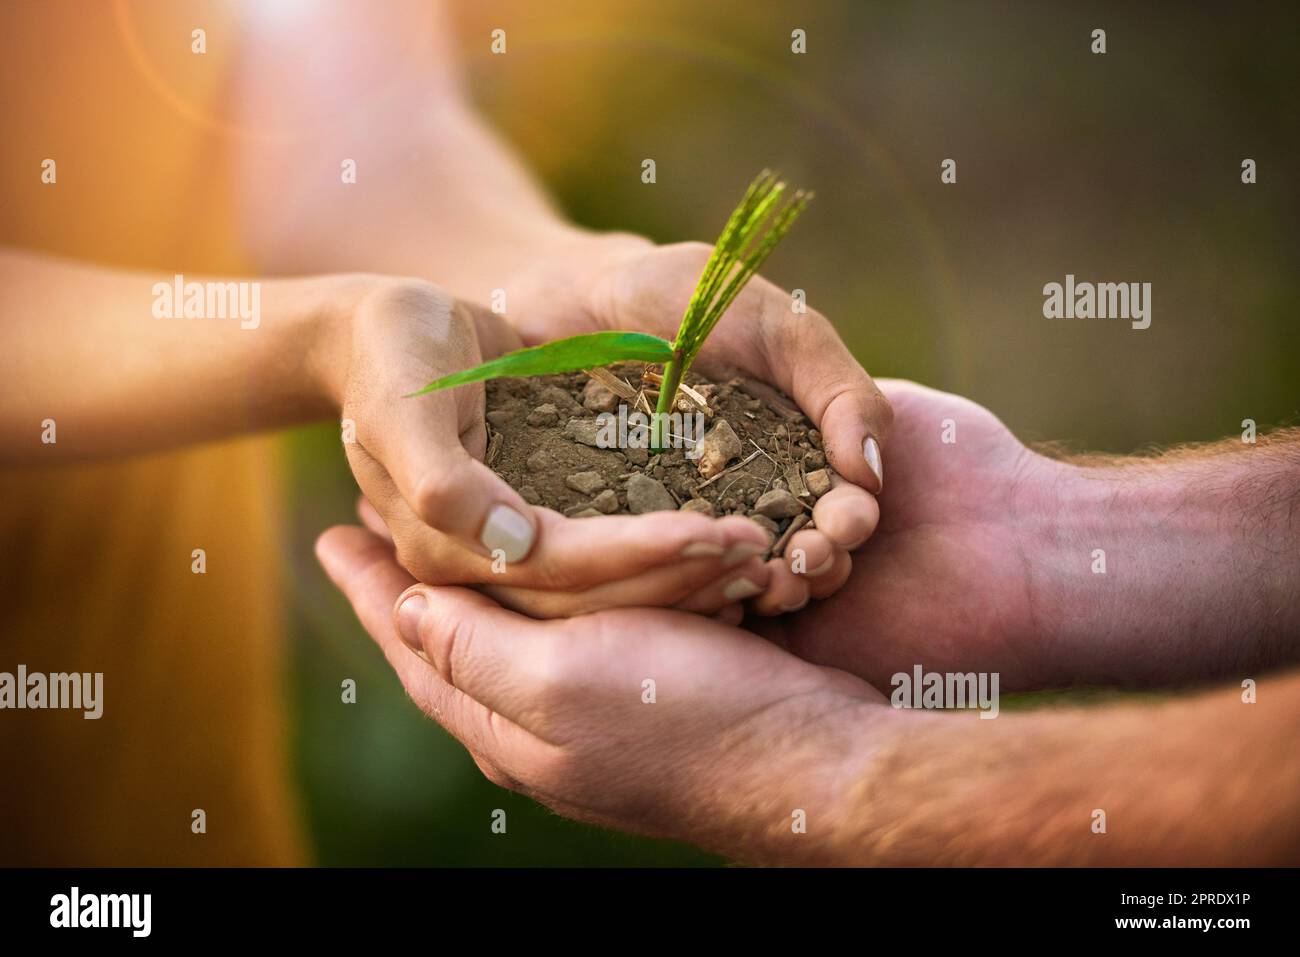 Les personnes soignées tiennent en main une croissance des semences, des plantes et des sols pour la sensibilisation à l'environnement, la conservation ou le développement durable. ECO couple avec petit arbre qui pousse en main pour la fertilité ou le jour de la Terre Banque D'Images